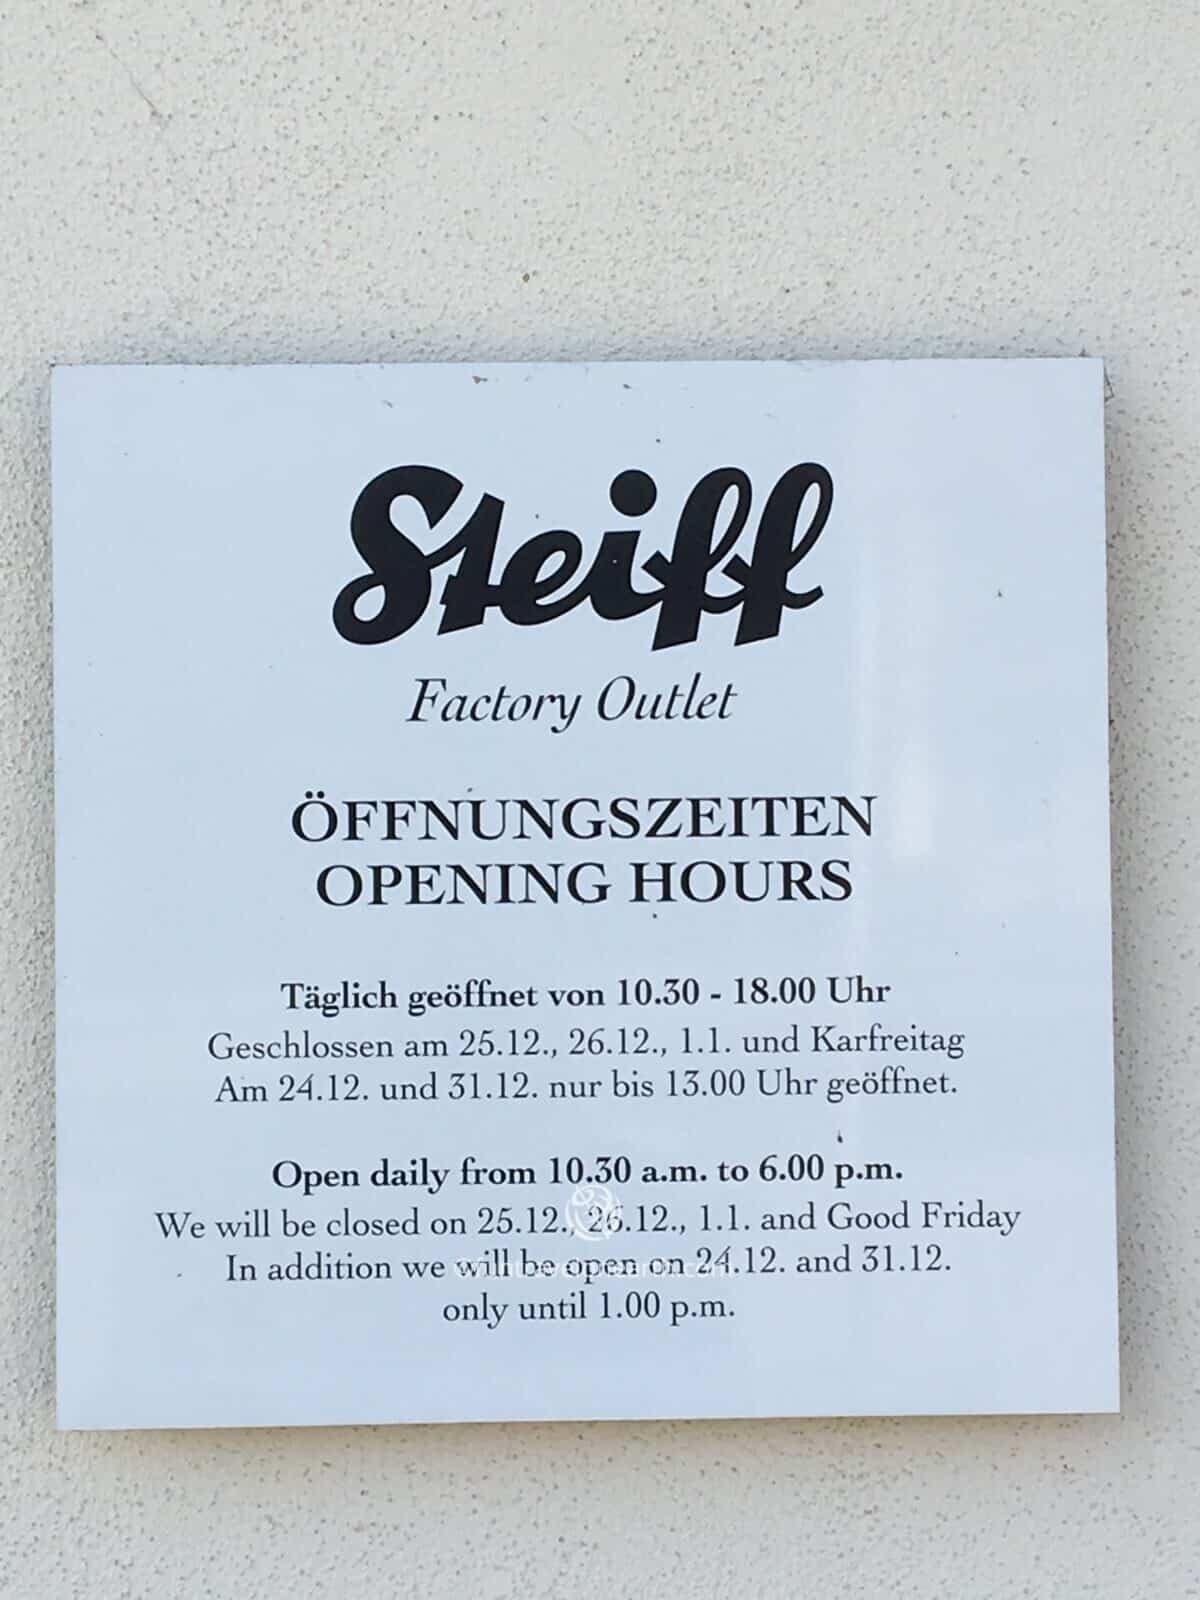 Giengen Steiff Factory Outlet